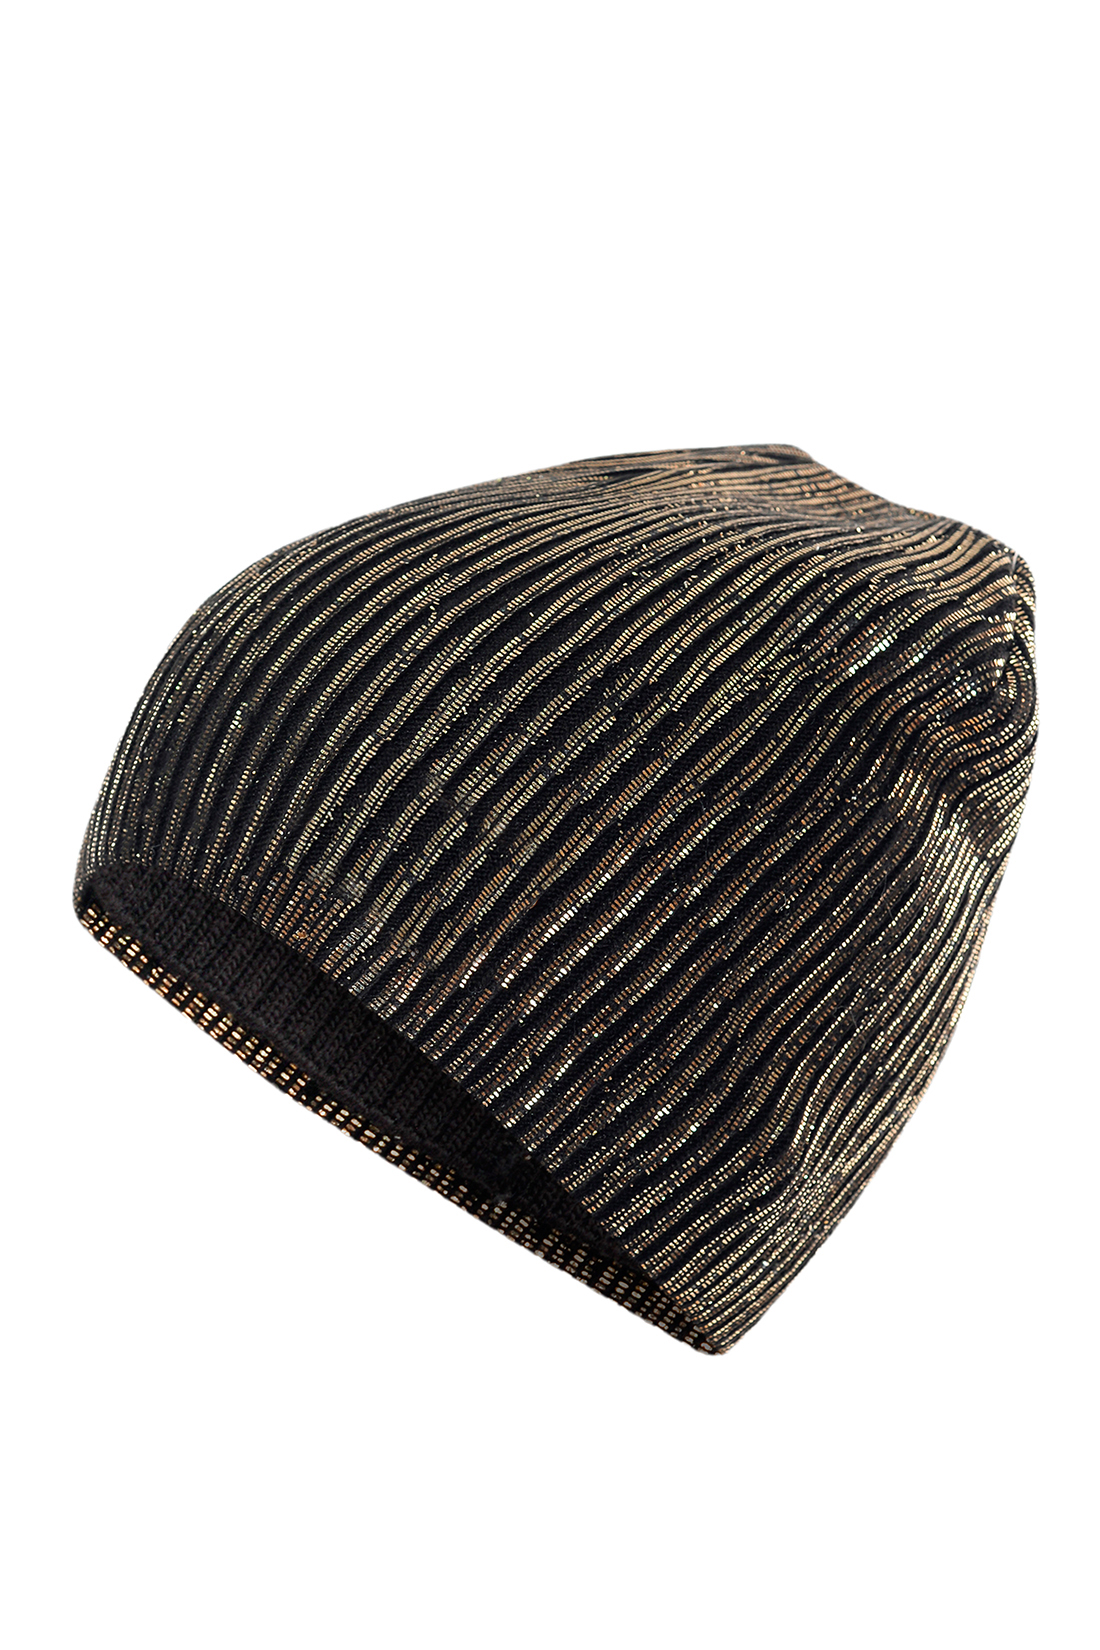 Чёрная шапка с золотым напылением (арт. baon B349572), размер Б/р 56, цвет золотой Чёрная шапка с золотым напылением (арт. baon B349572) - фото 2